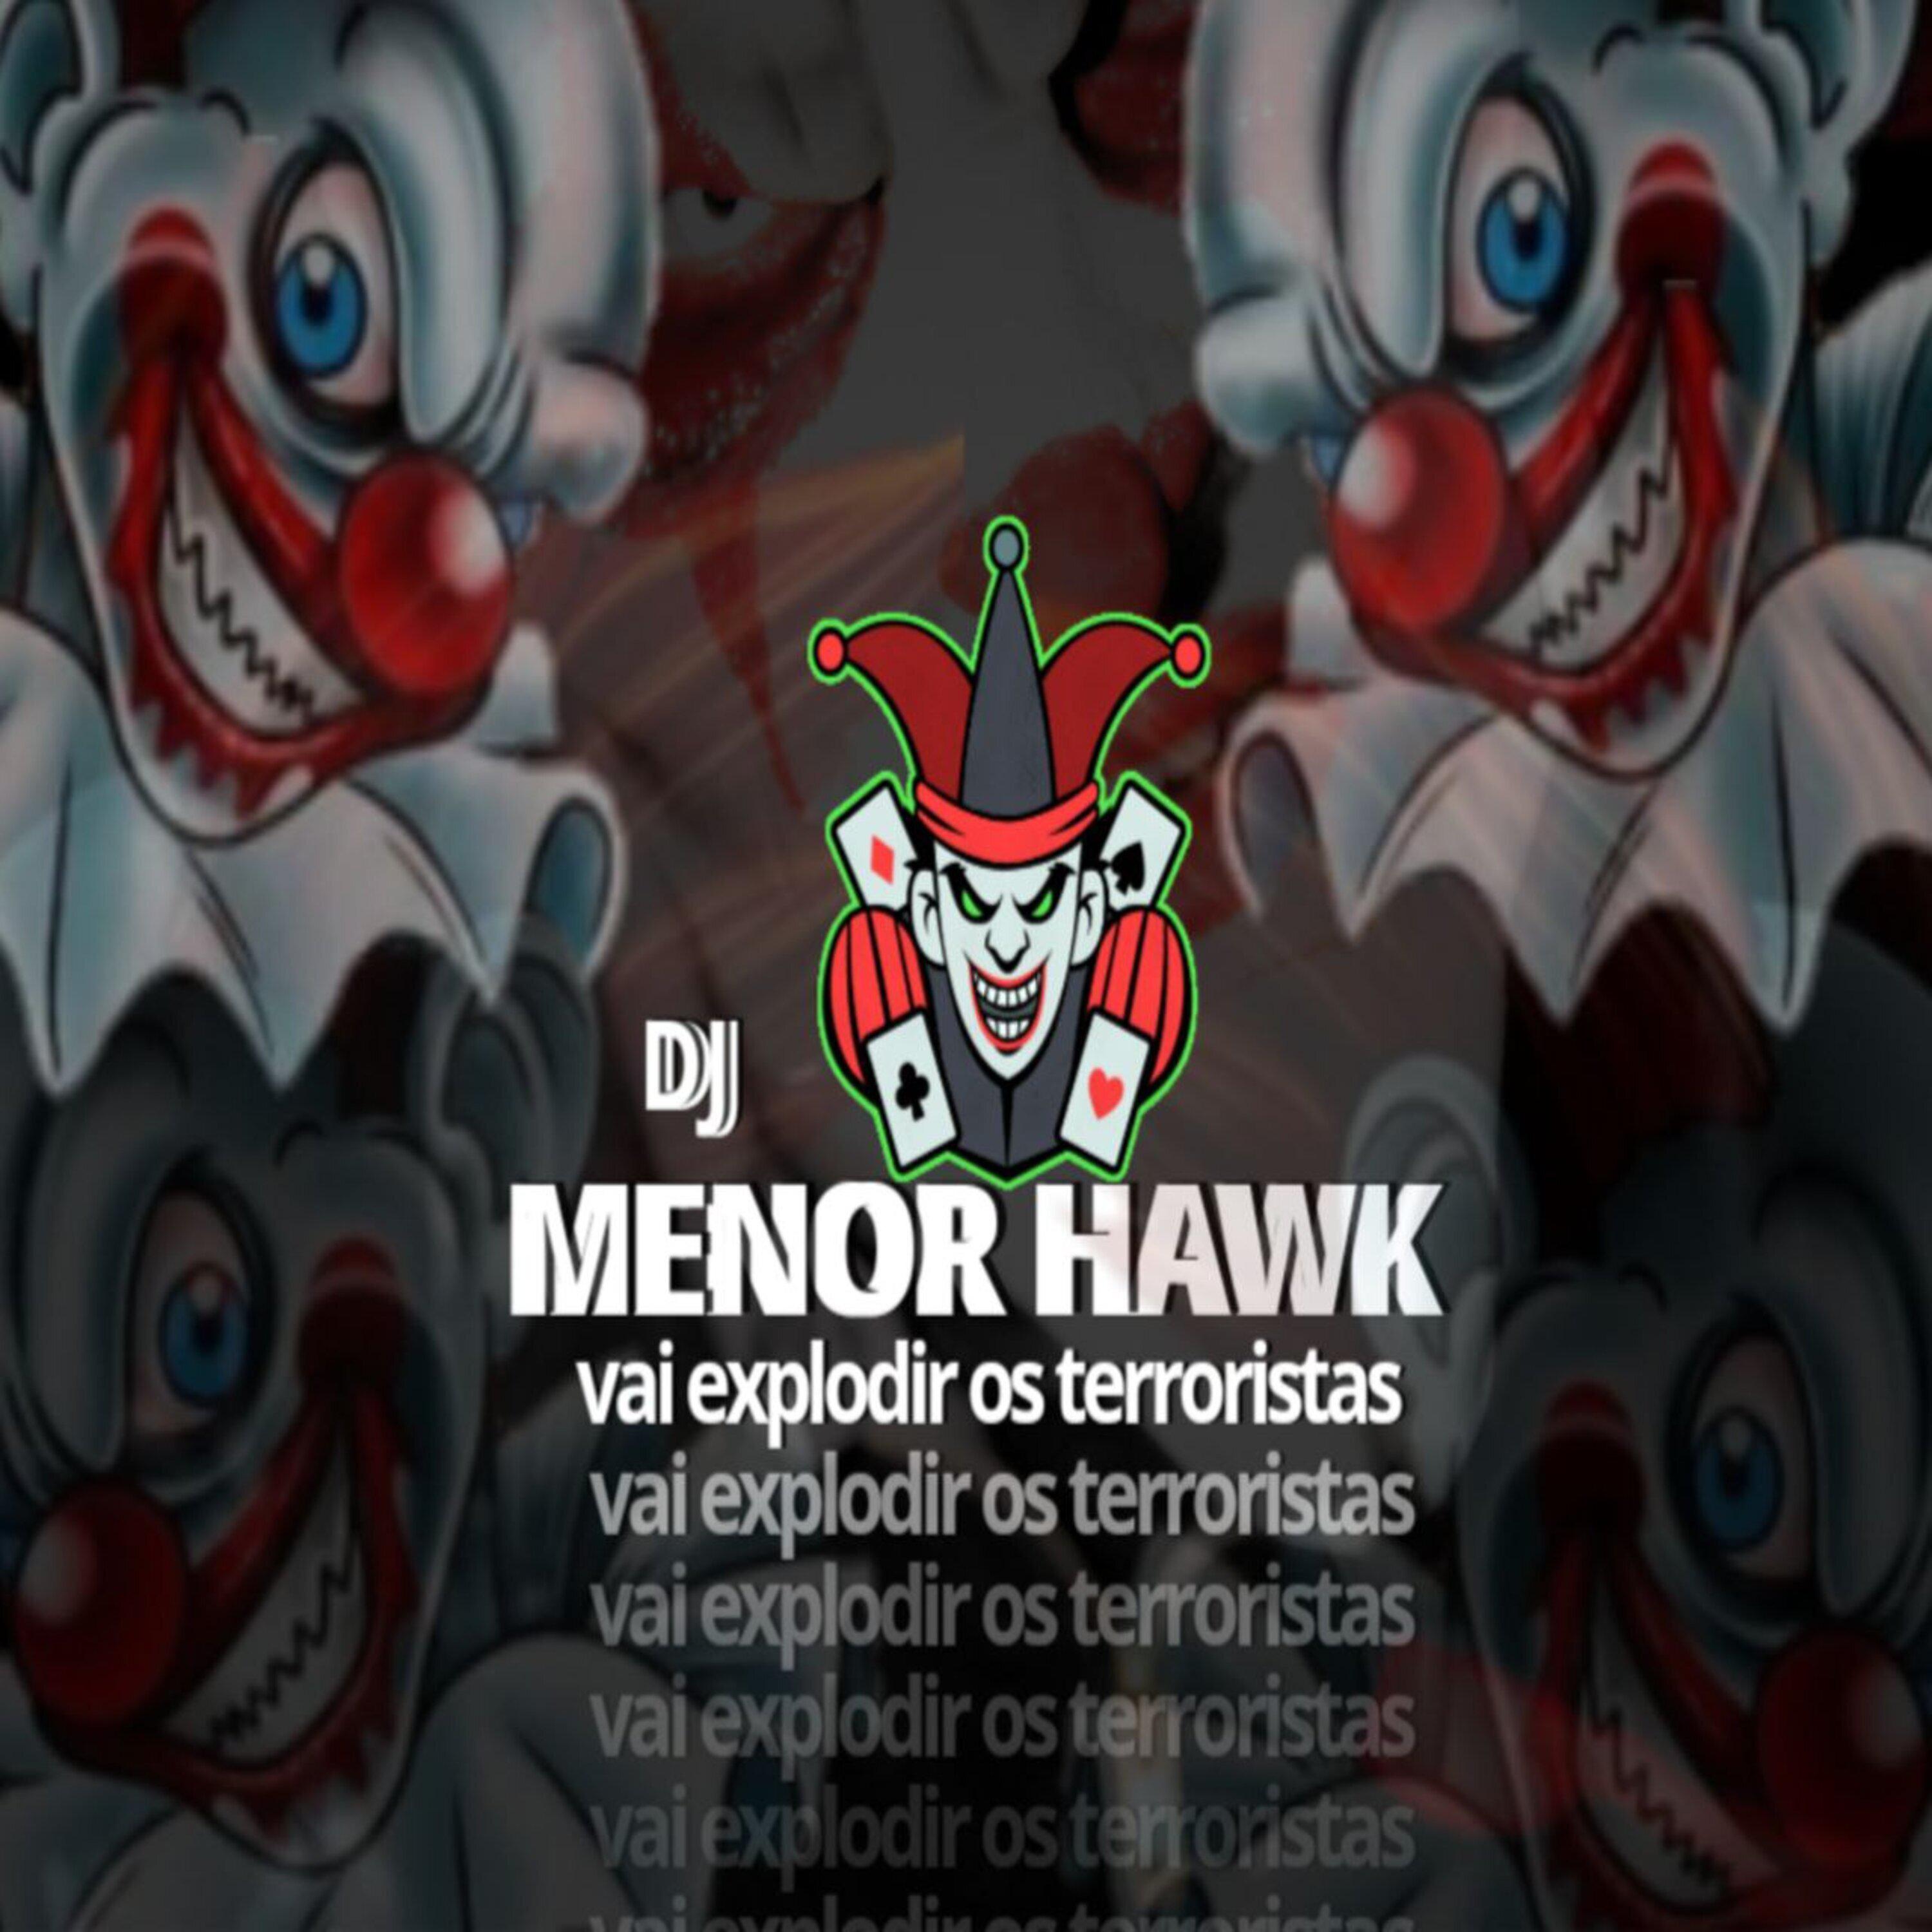 DJ MenorHawk - Baile da serra & Bufalo biu